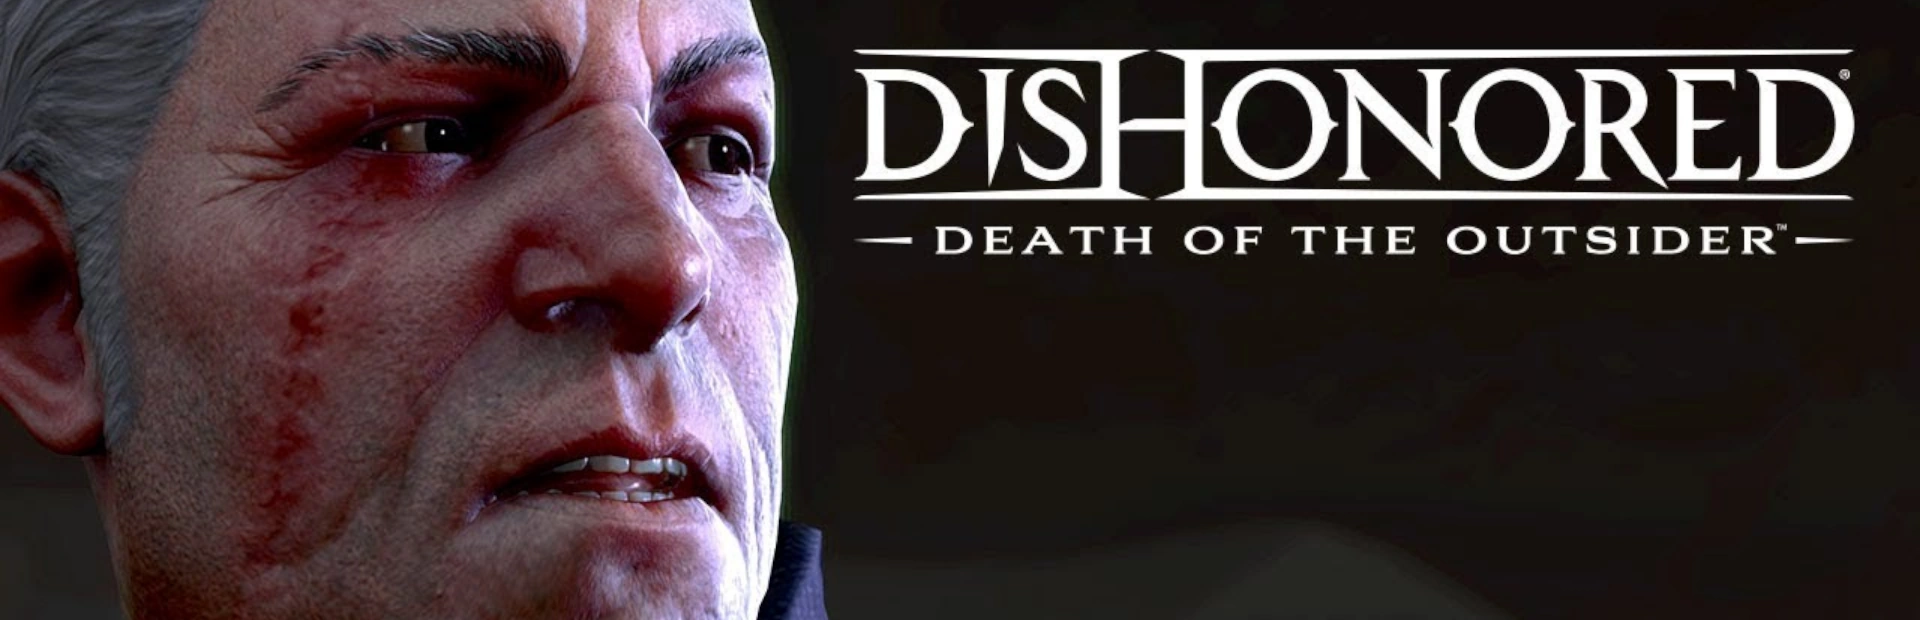 دانلود بازیDishonored: Death of the Outsider برای PC|گیمباتو